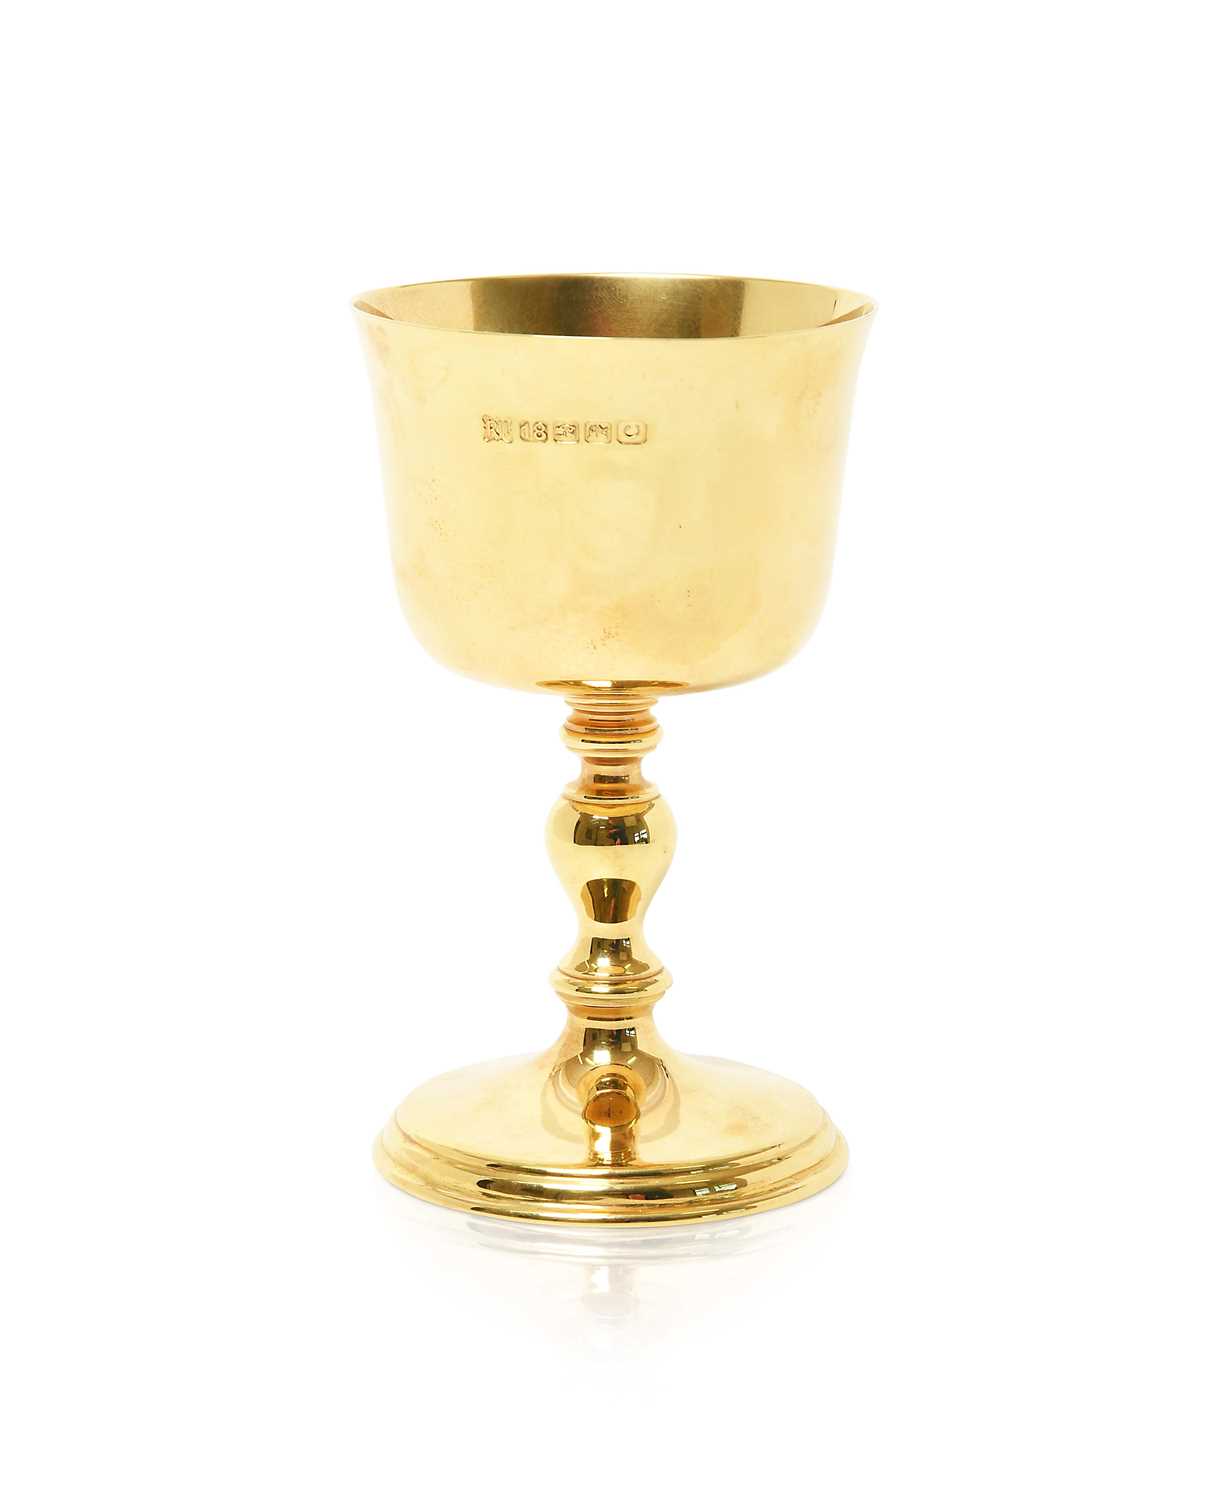 Lot 2074 - An Irish Gold Goblet